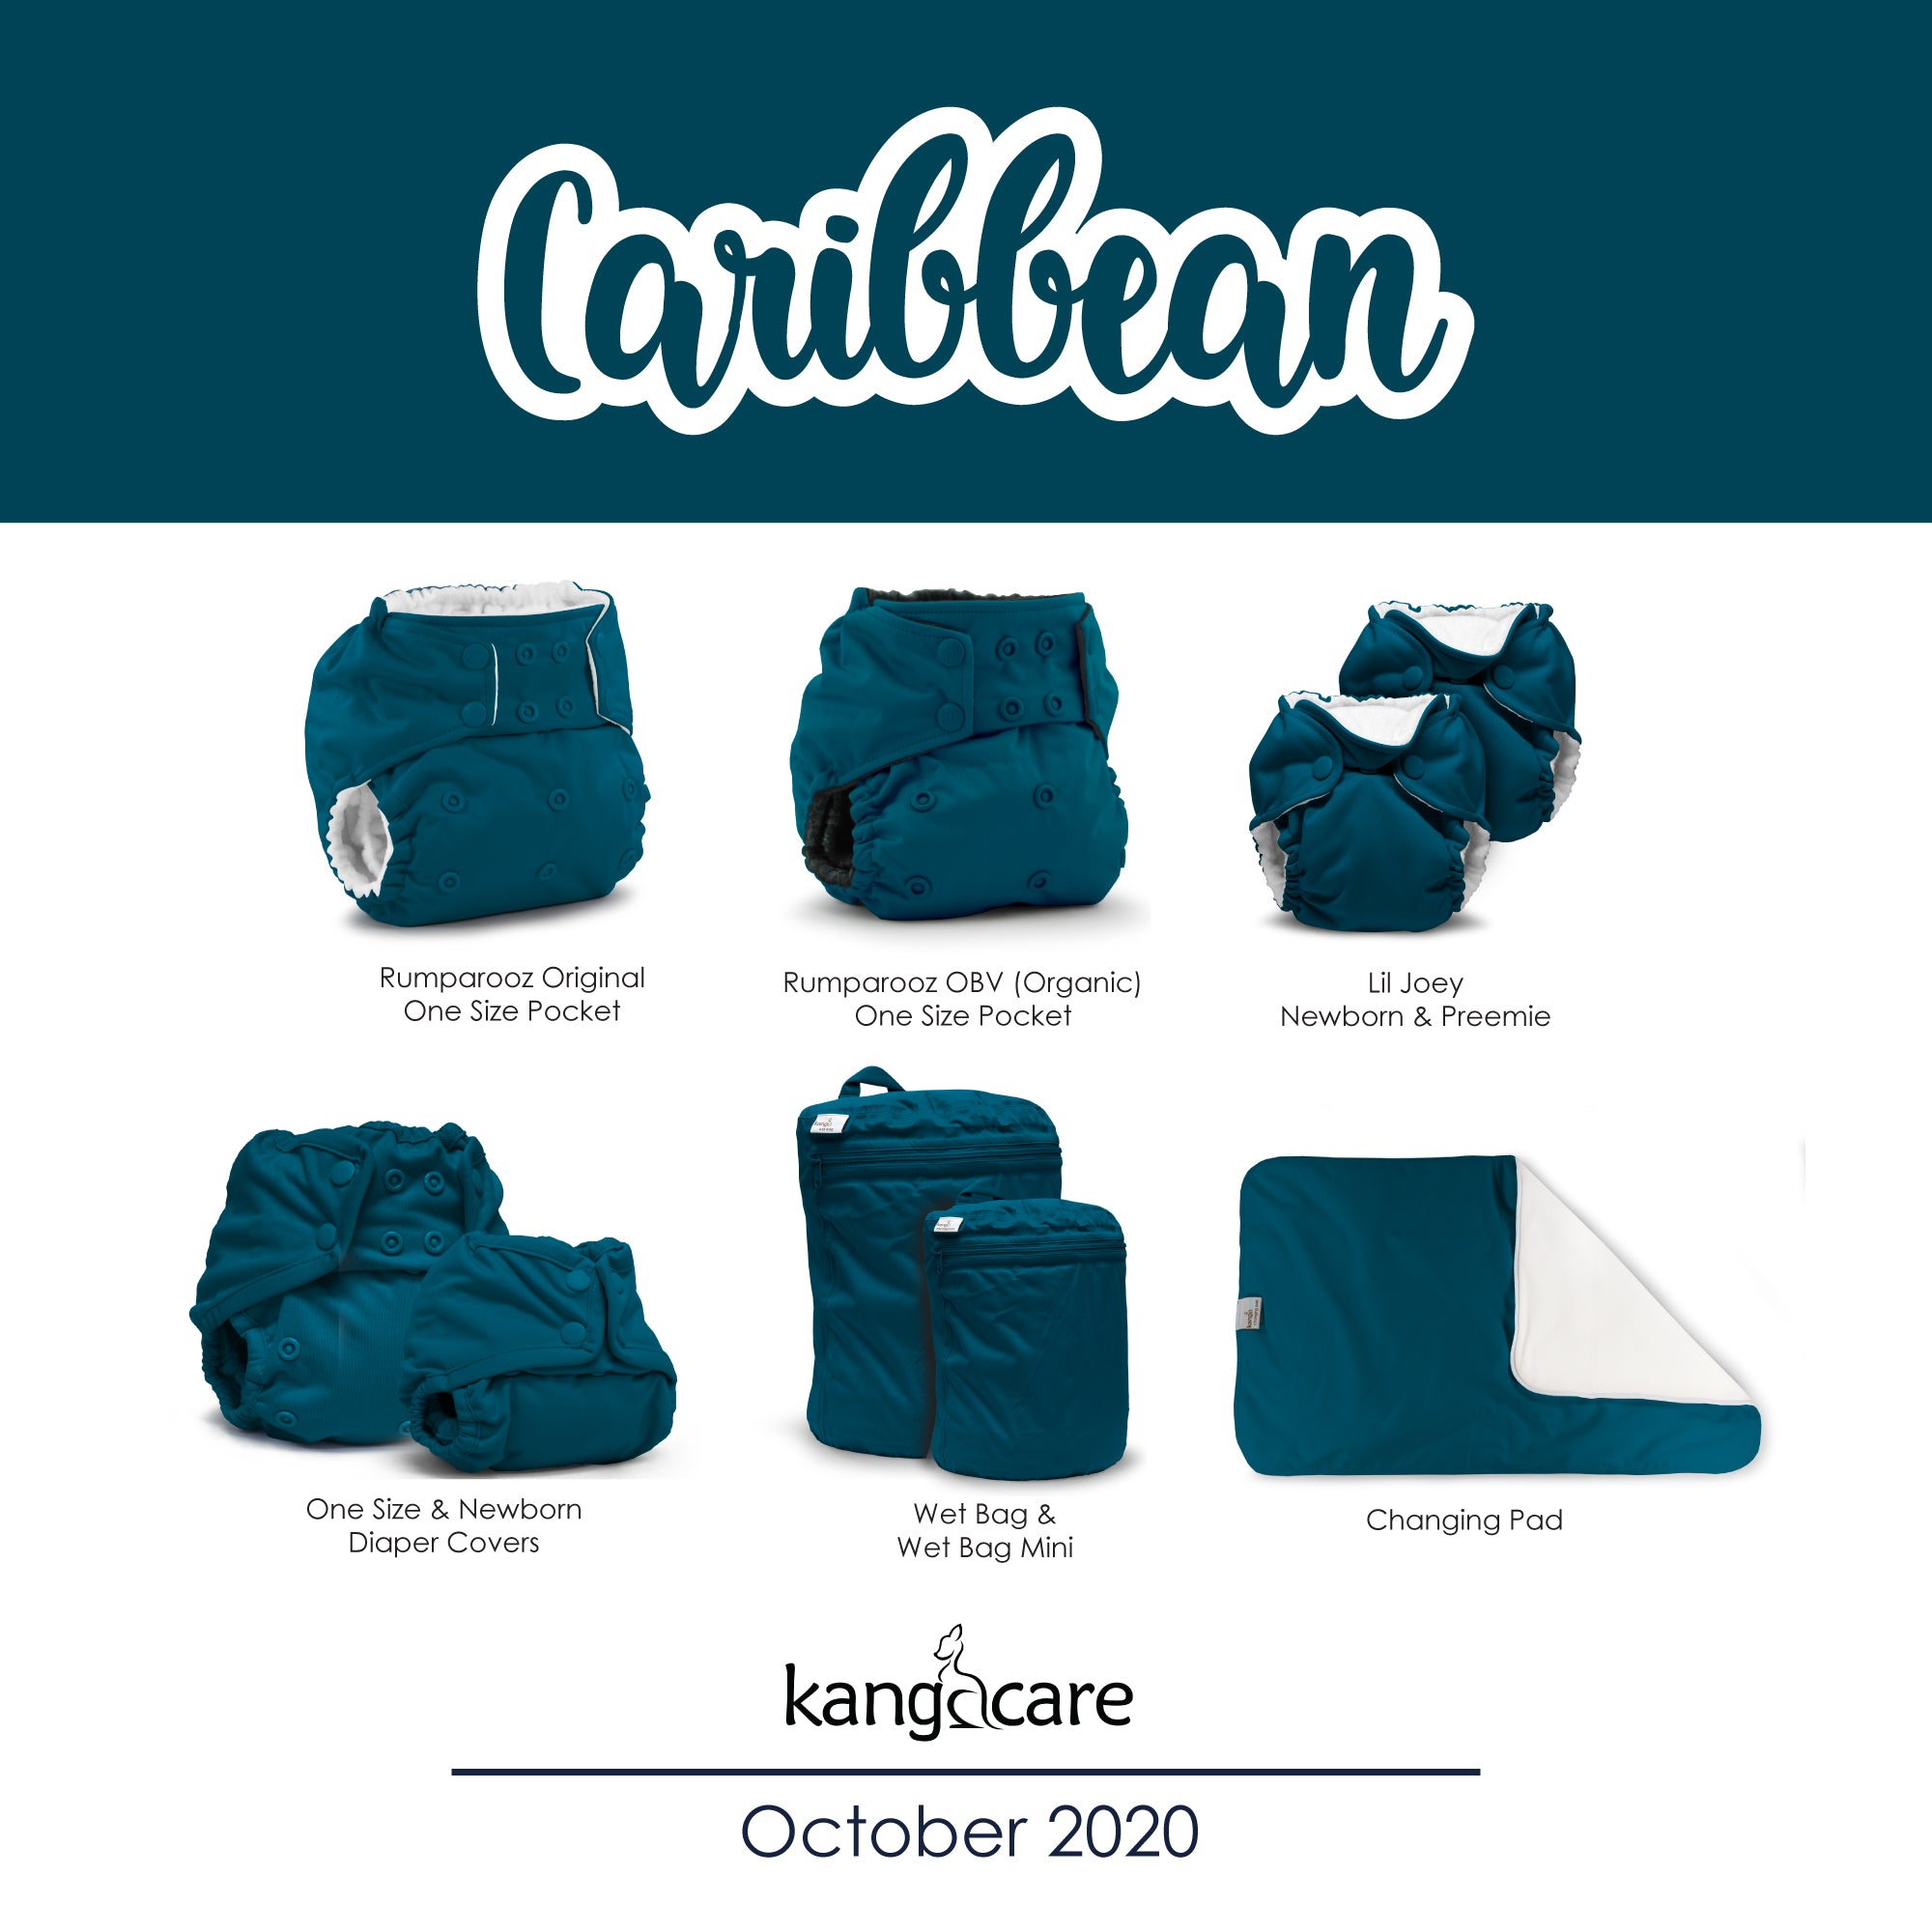 https://www.kangacare.com/cdn/shop/products/KC-2020-Caribbean-Product-Lineup_33c855db-2a27-4bcc-b580-02abae93e75a_1024x1024@2x.jpg?v=1695136267